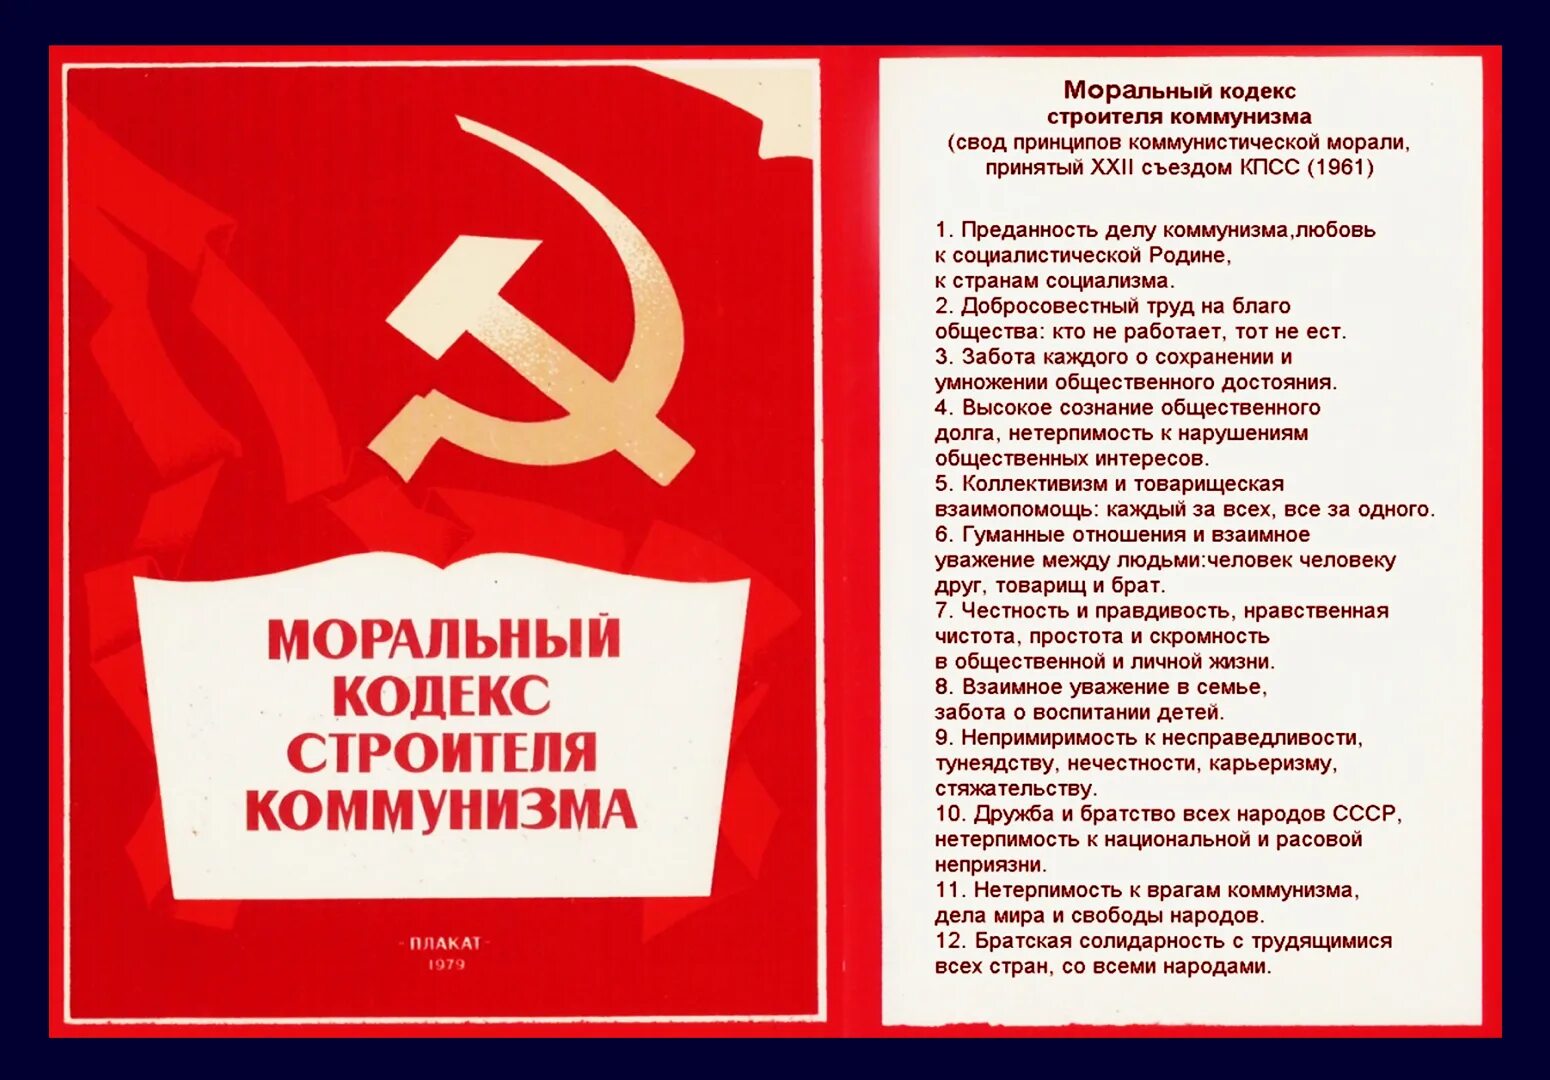 Уважение товарищ. Моральный кодекс строителя коммунизма. Моральный кодекс строителя коммунизма 1961. Кодекс строителя коммунизма. Моральный кодекс строителя коммунизма плакат.